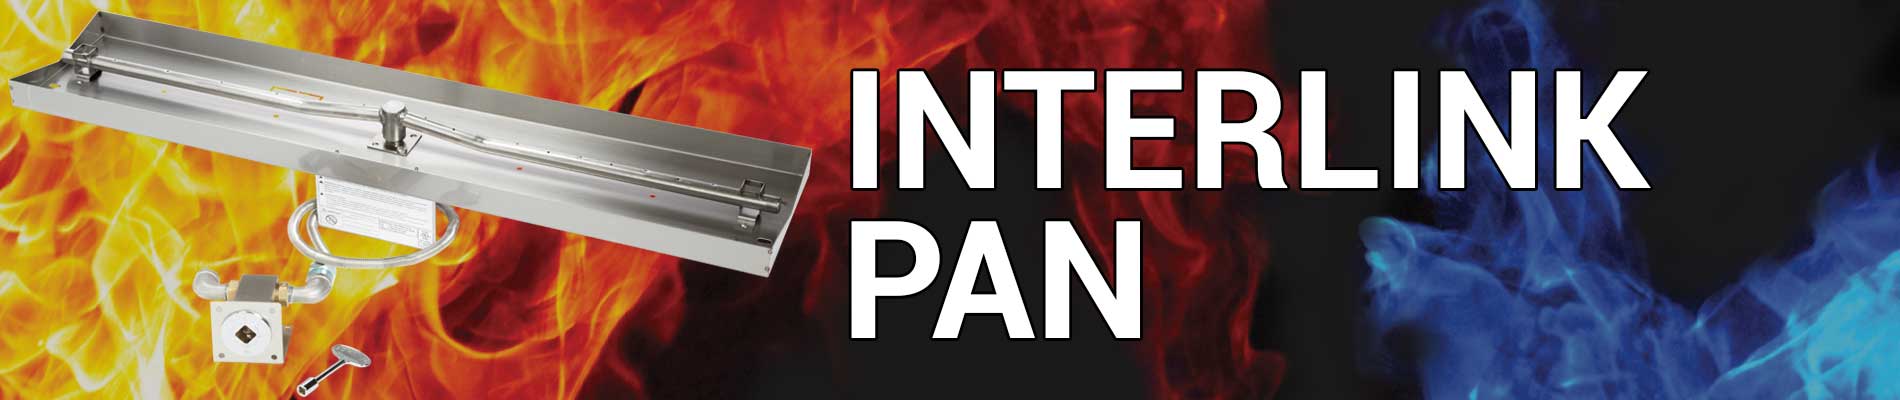 Interlink Pan